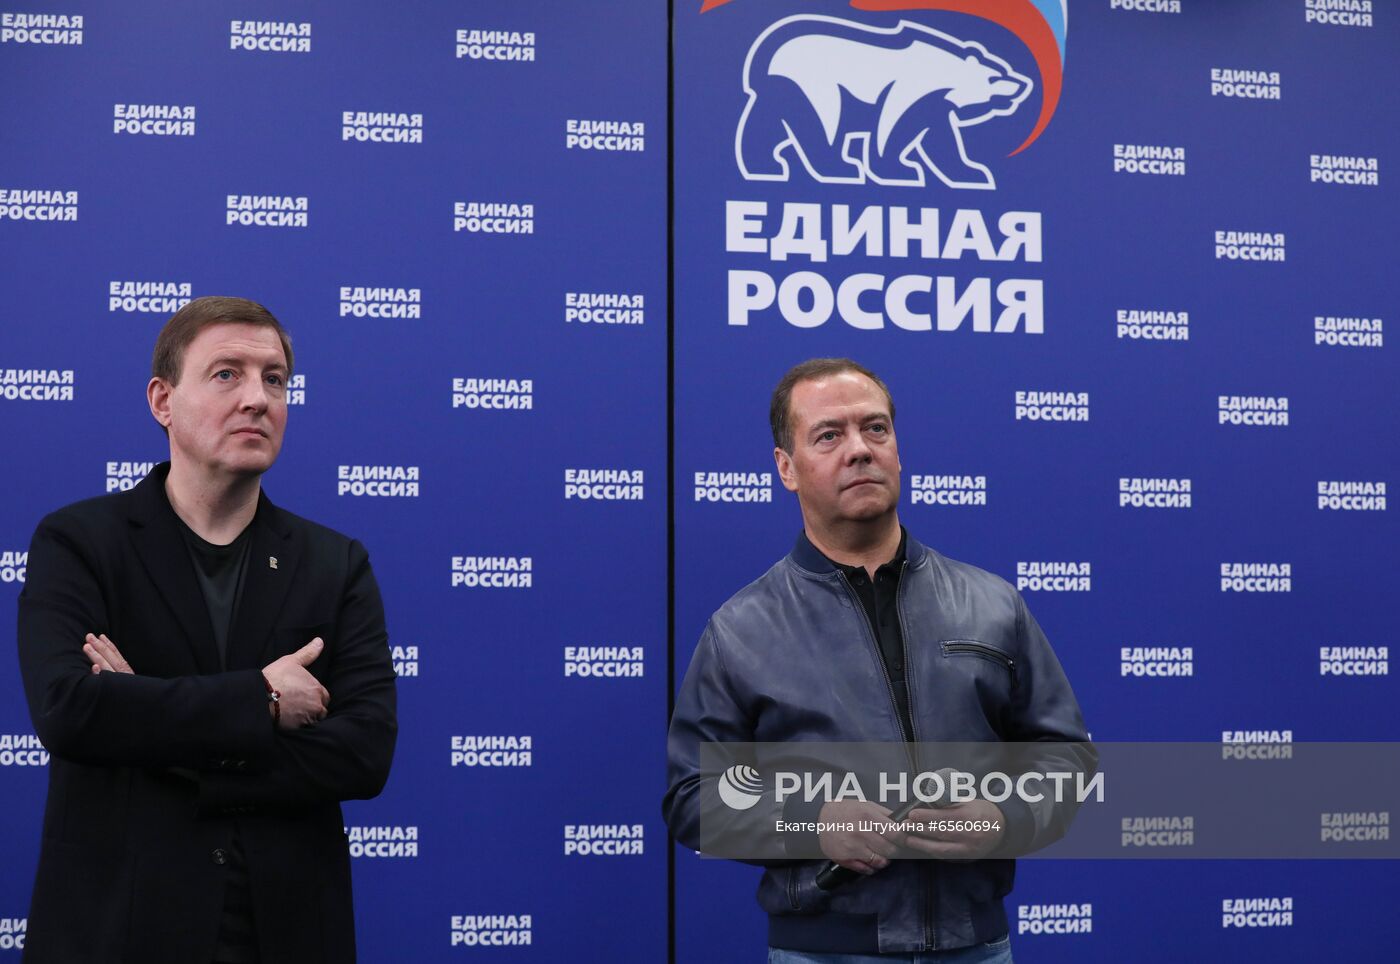 Председатель партии "Единая Россия" Д. Медведев дал старт подсчету голосов праймериз